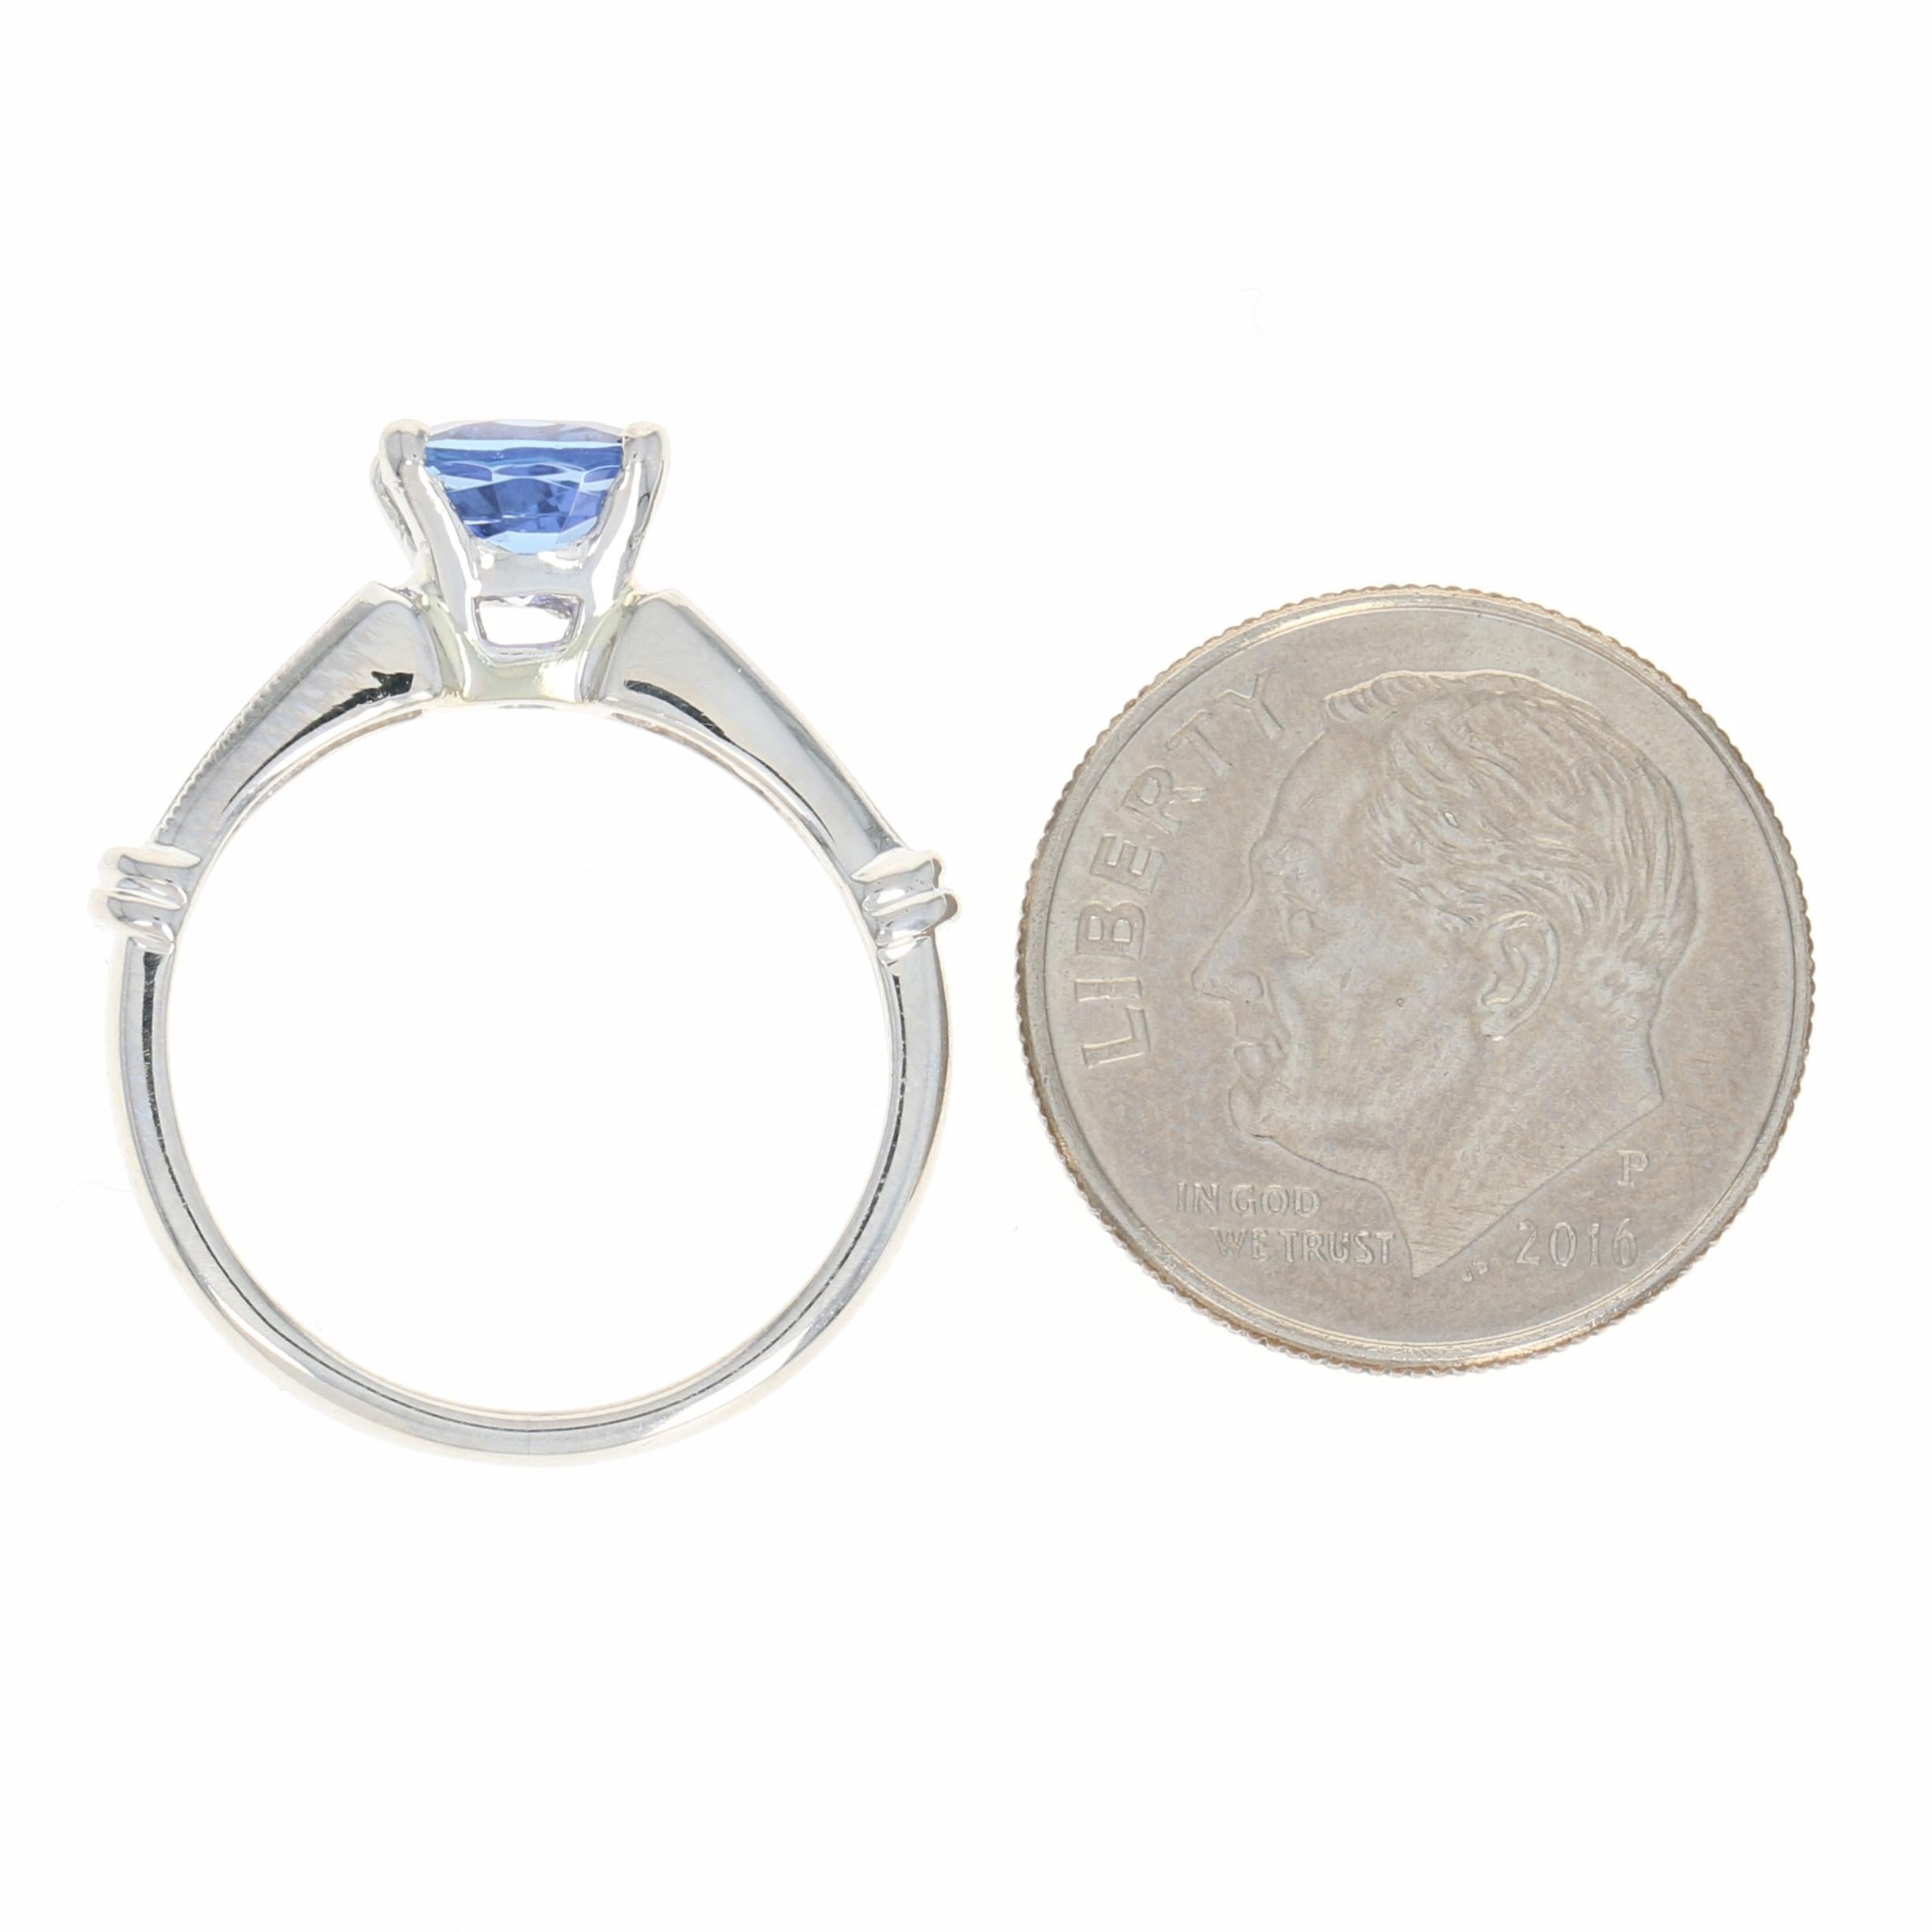 Tanzanite and Diamond Engagement Ring, 900 Platinum Milgrain 1.68 Carat 1